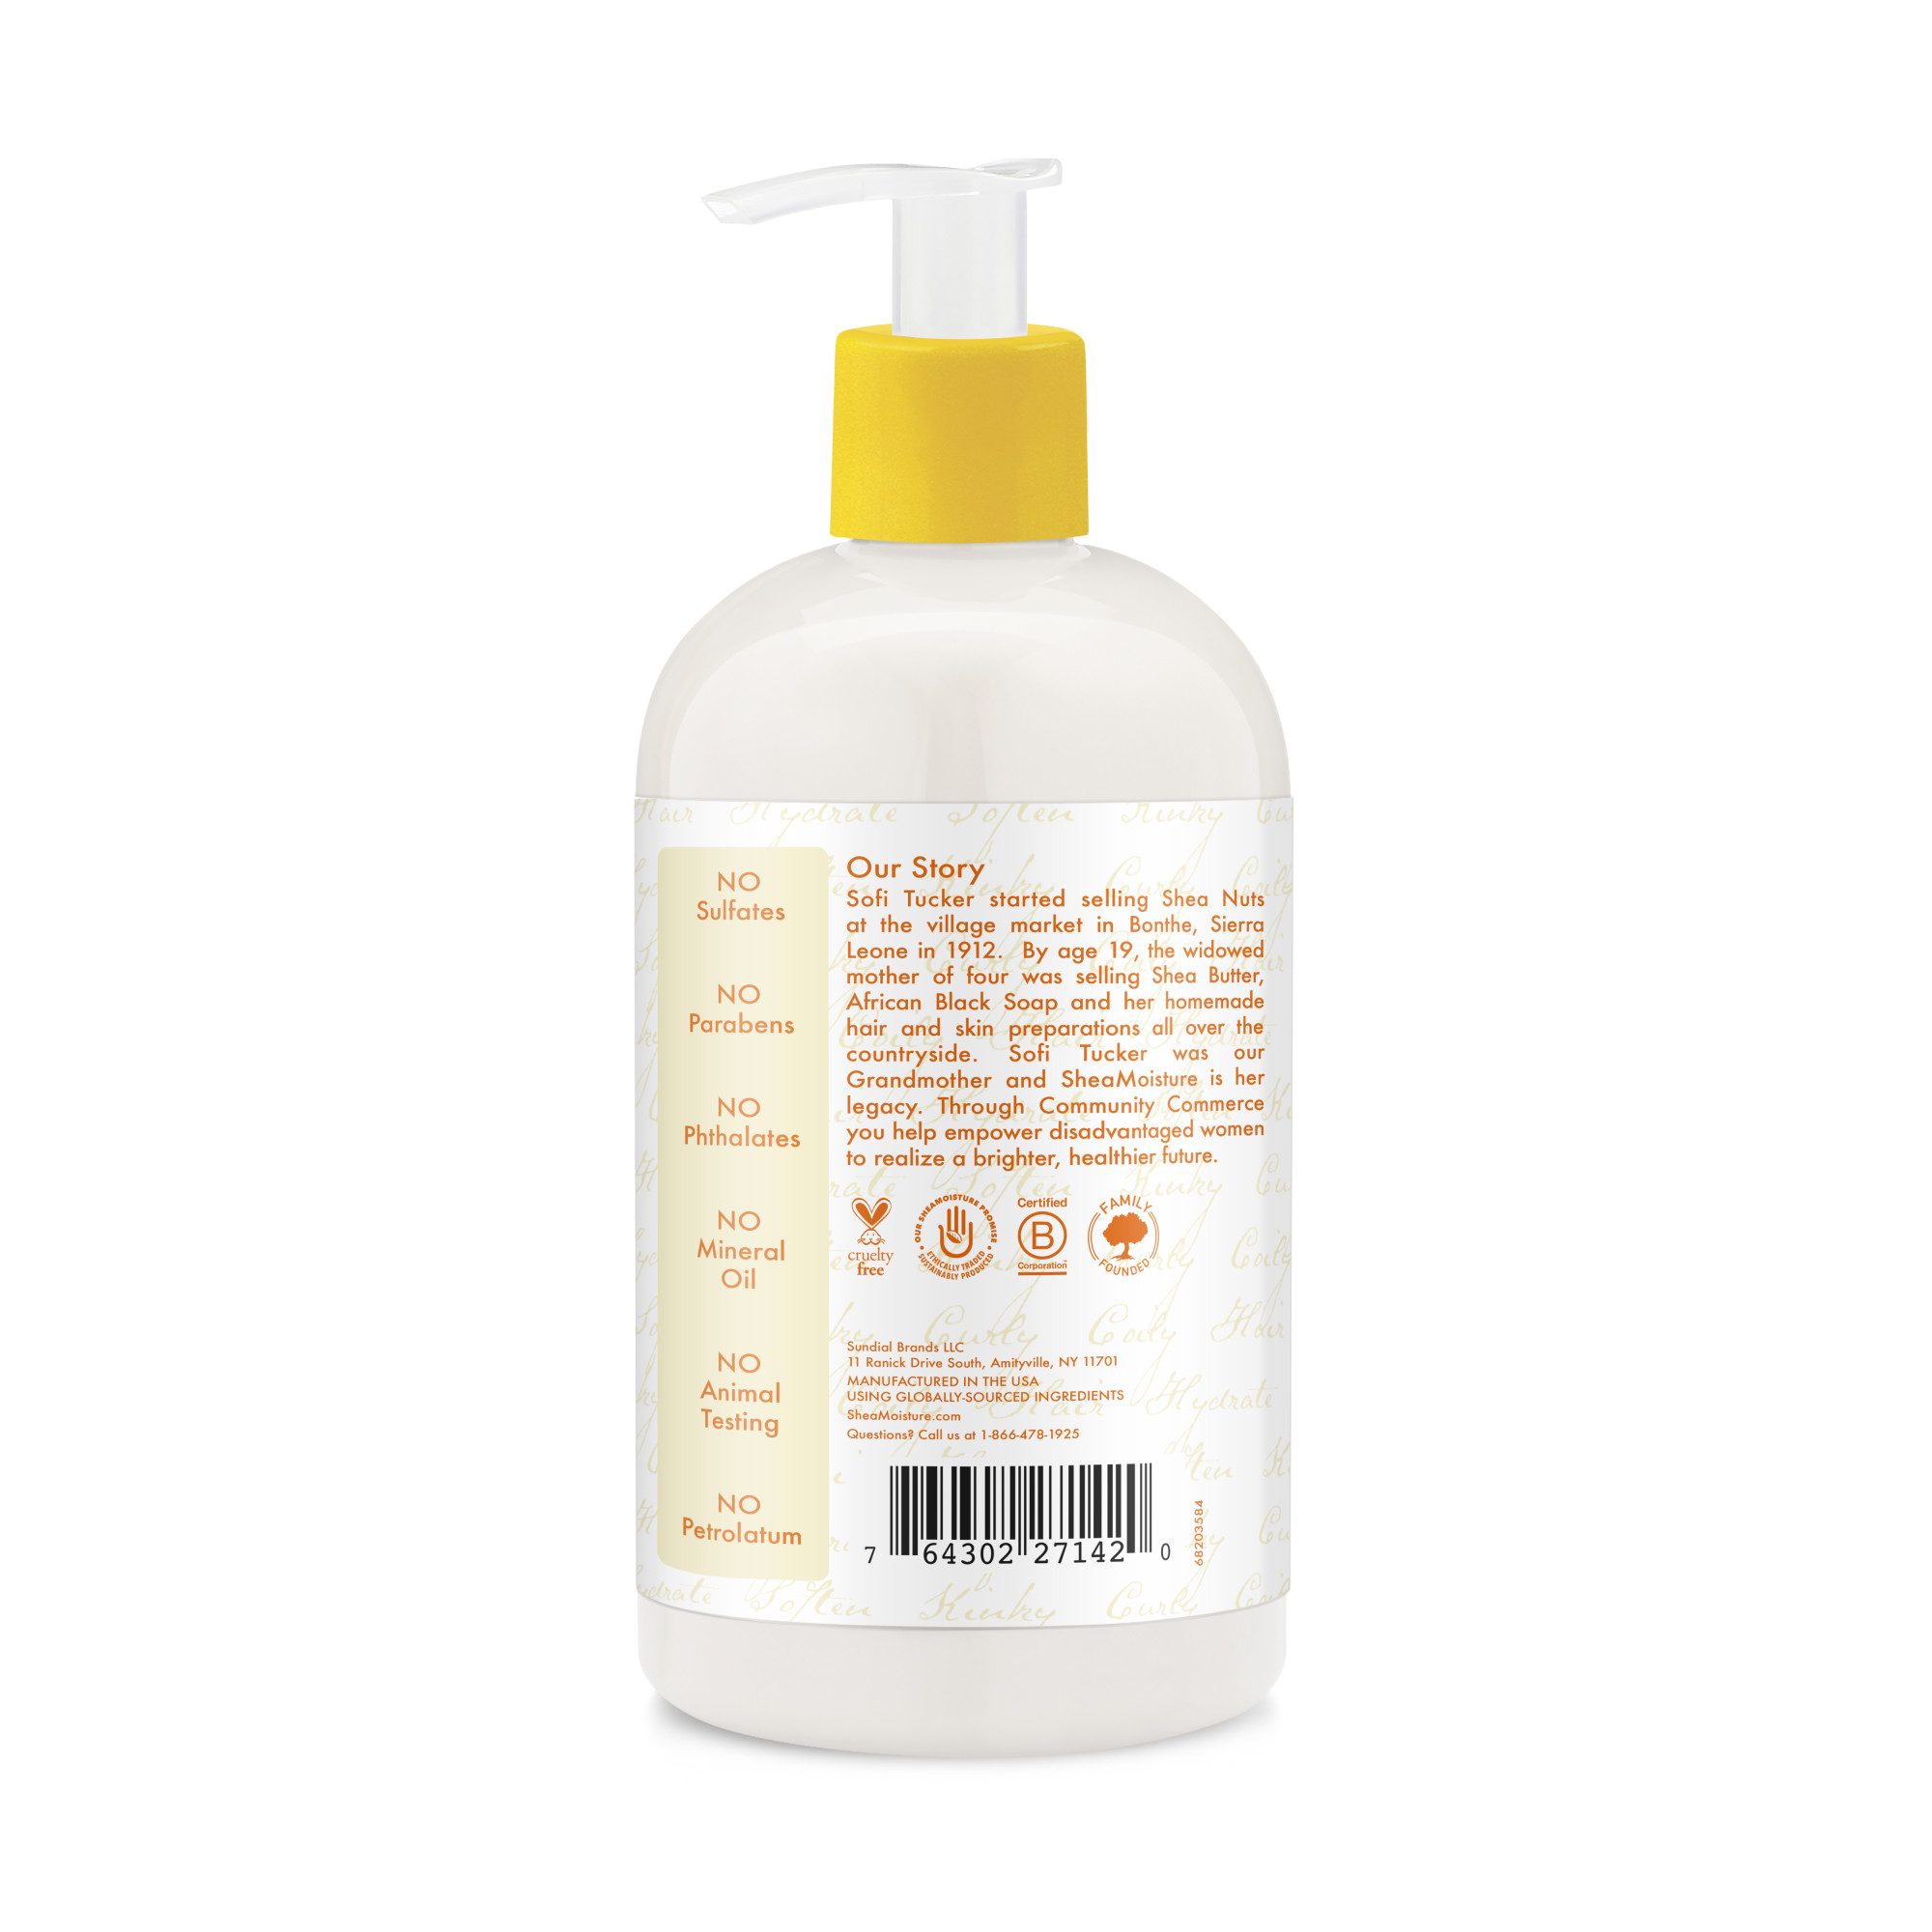 SheaMoisture Wash N' Go Shampoo Phthalate Free Shampoo to Cleanse and Detangle Curly Hair, 13 oz - image 3 of 8